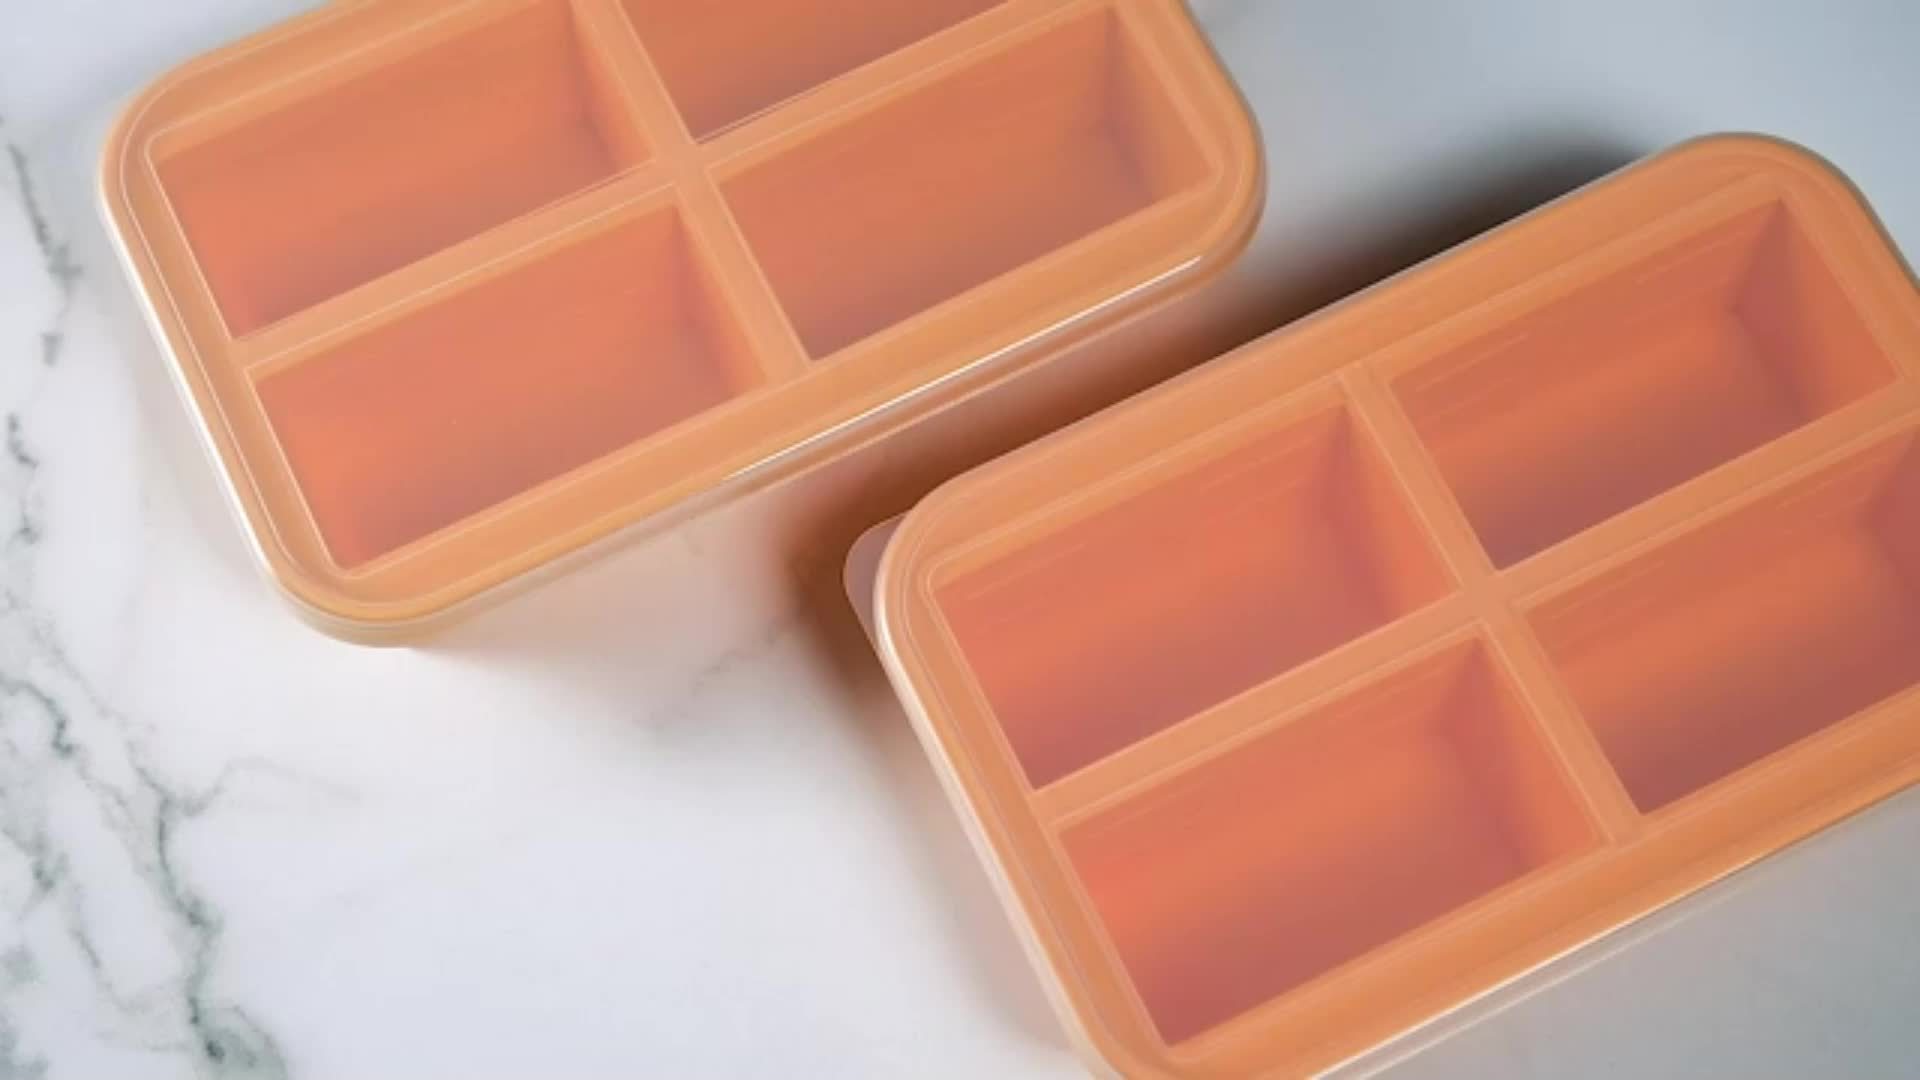  XOMOO Silicone Freezer Tray With Lid - Soup Freezer